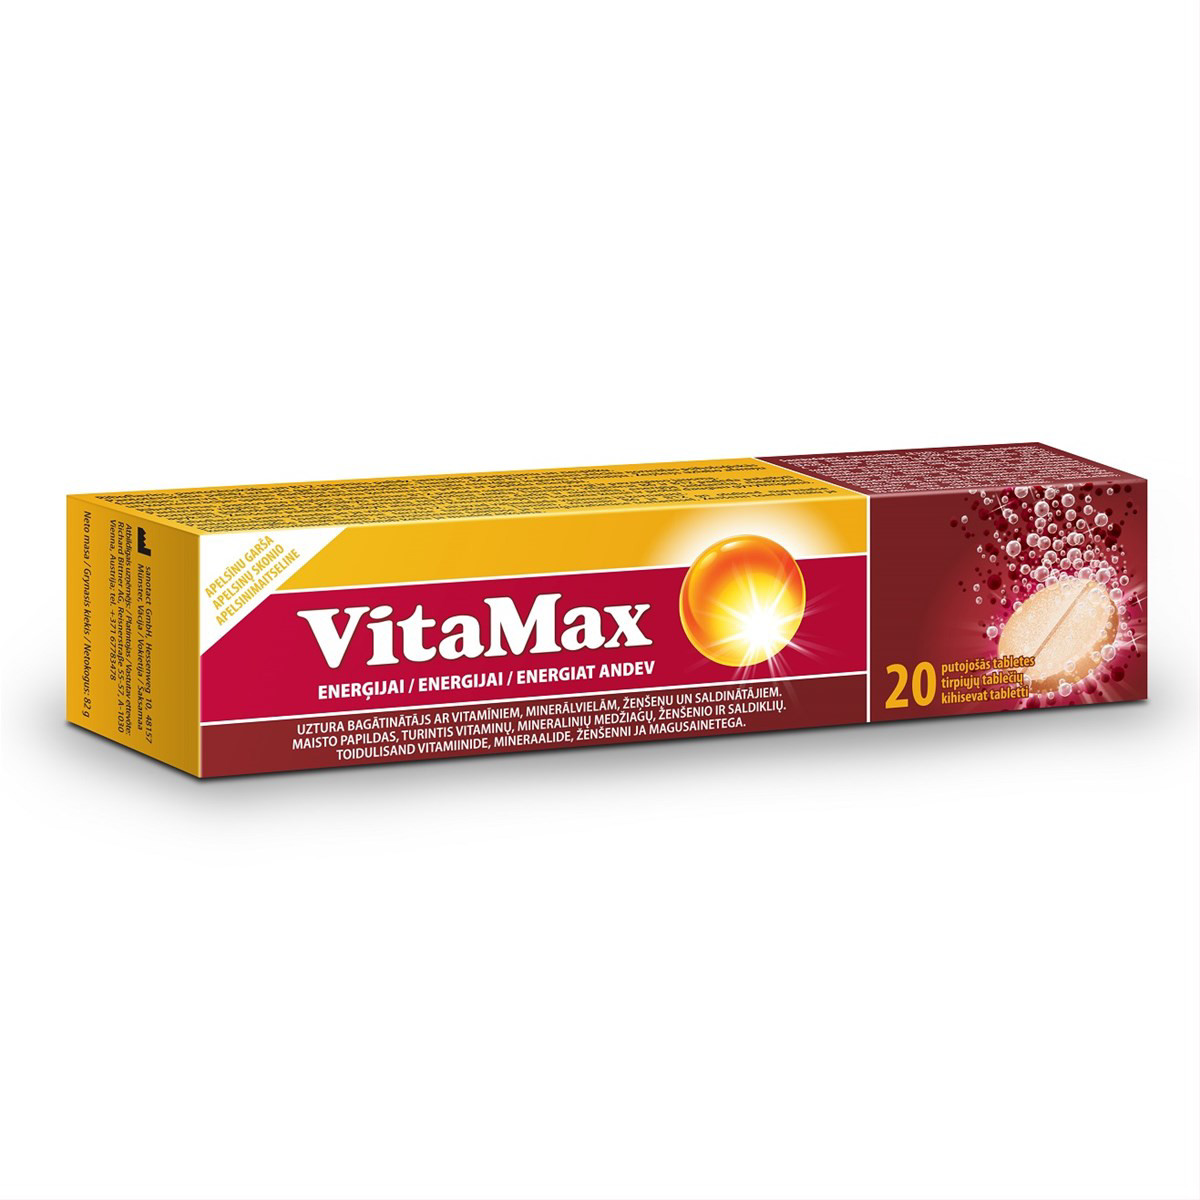 VITAMAX, tirpiosios tabletės, apelsinų skonio, 20 vnt.